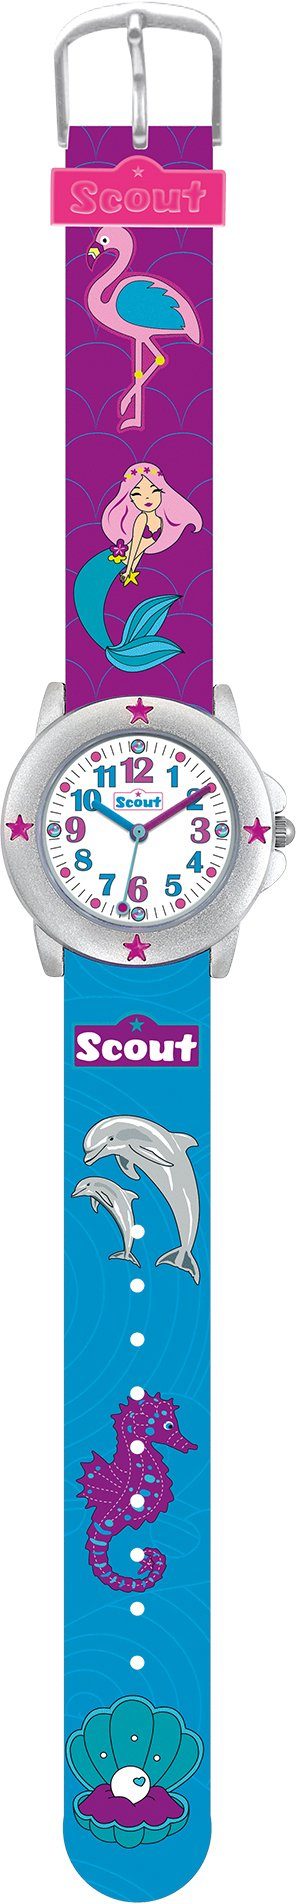 Favoritensuche Scout Quarzuhr Star Kids, 280393023, Muschel-Delphin-,Meerjungfraumotiv, als auch ideal Geschenk